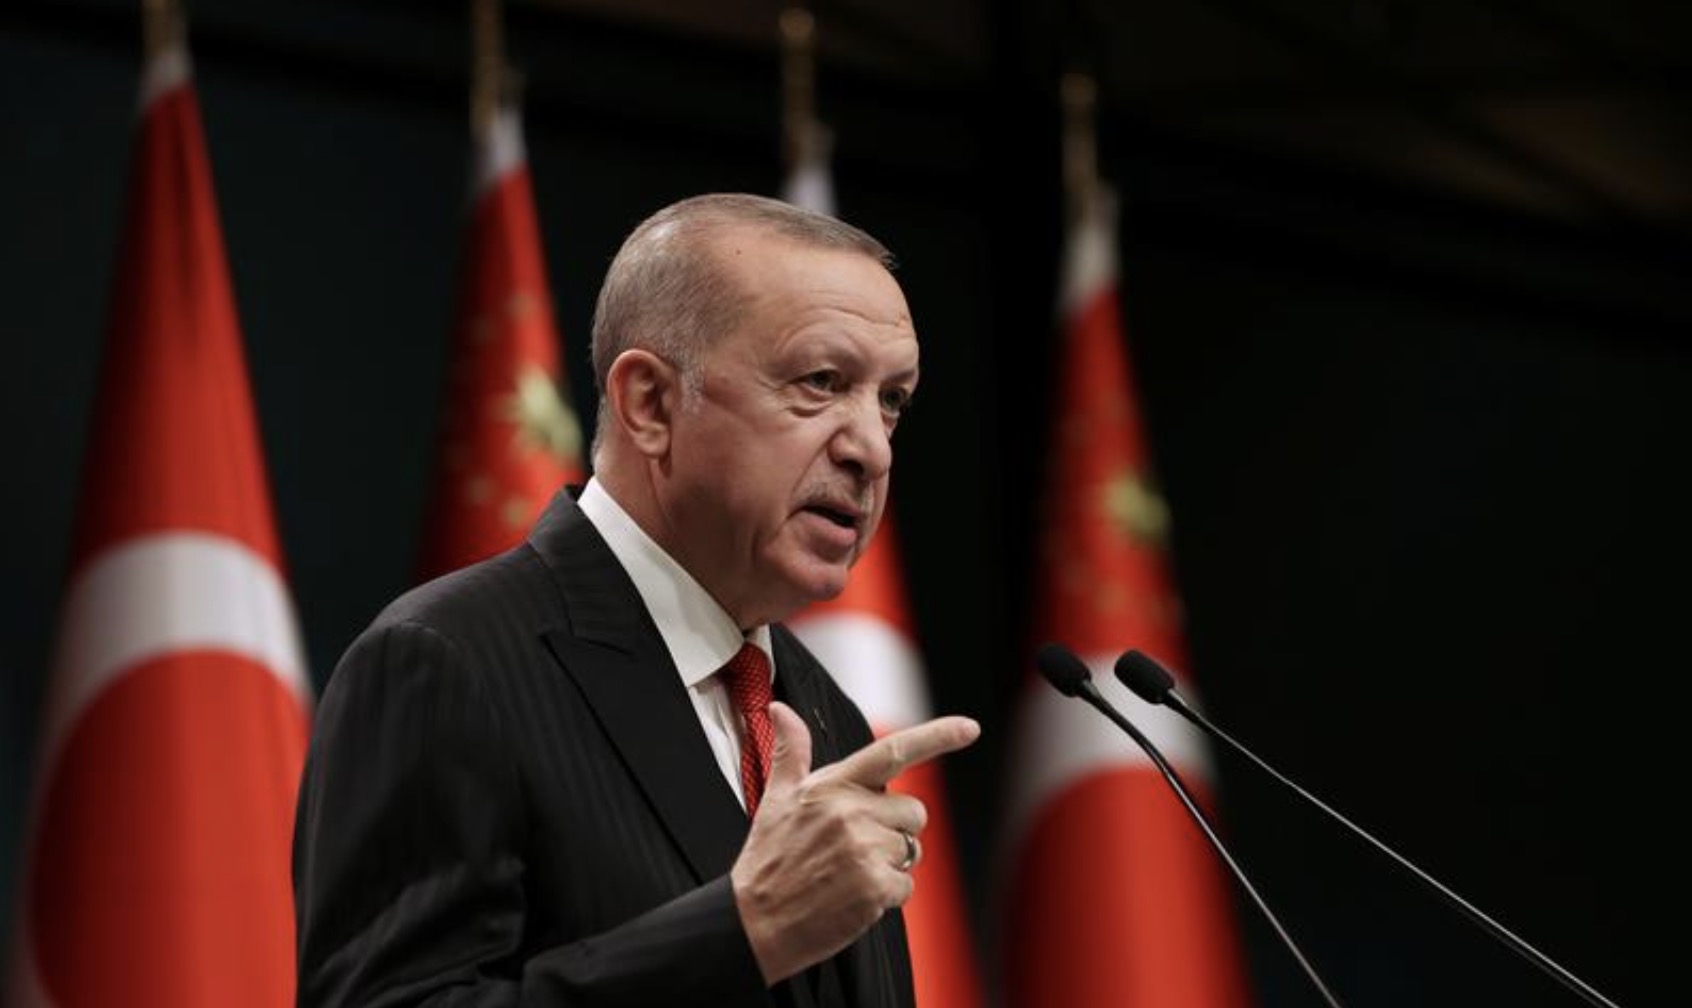 【环球网报道 见习记者 边子豪】据路透社报道,土耳其总统埃尔多安